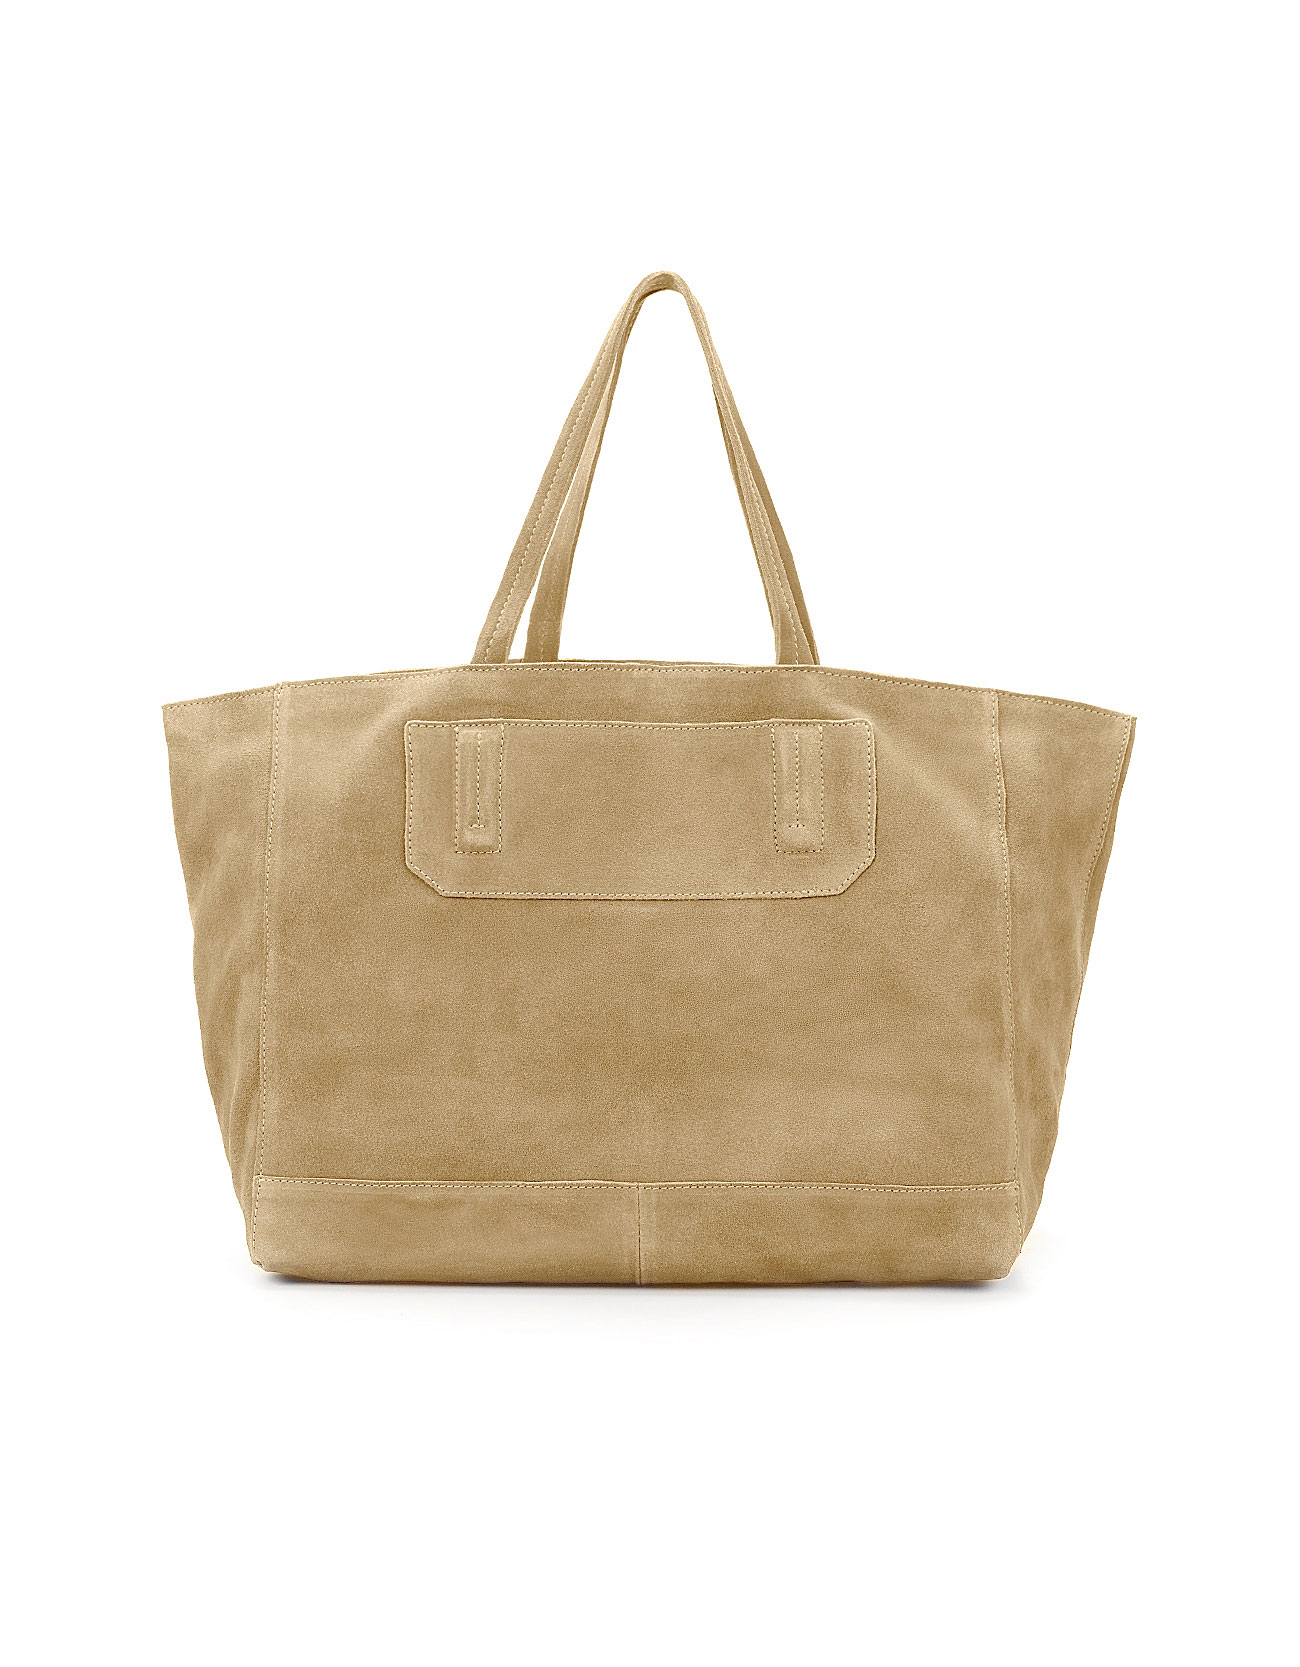 Zara Suede Shopper Bag in Beige (mink) | Lyst